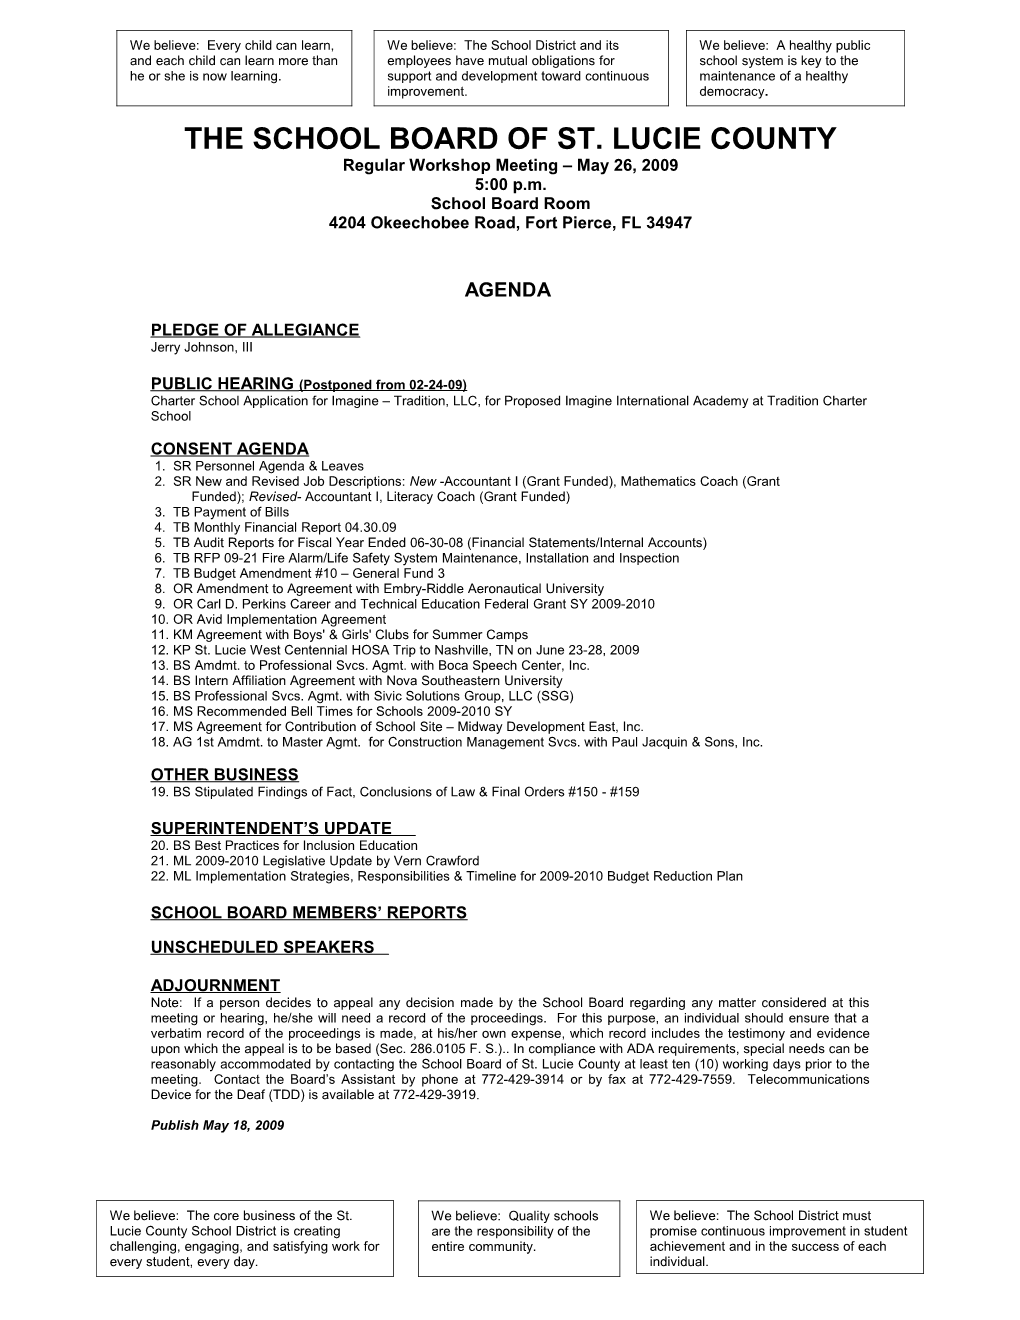 05-26-09 SLCSB Regular Workshop Agenda